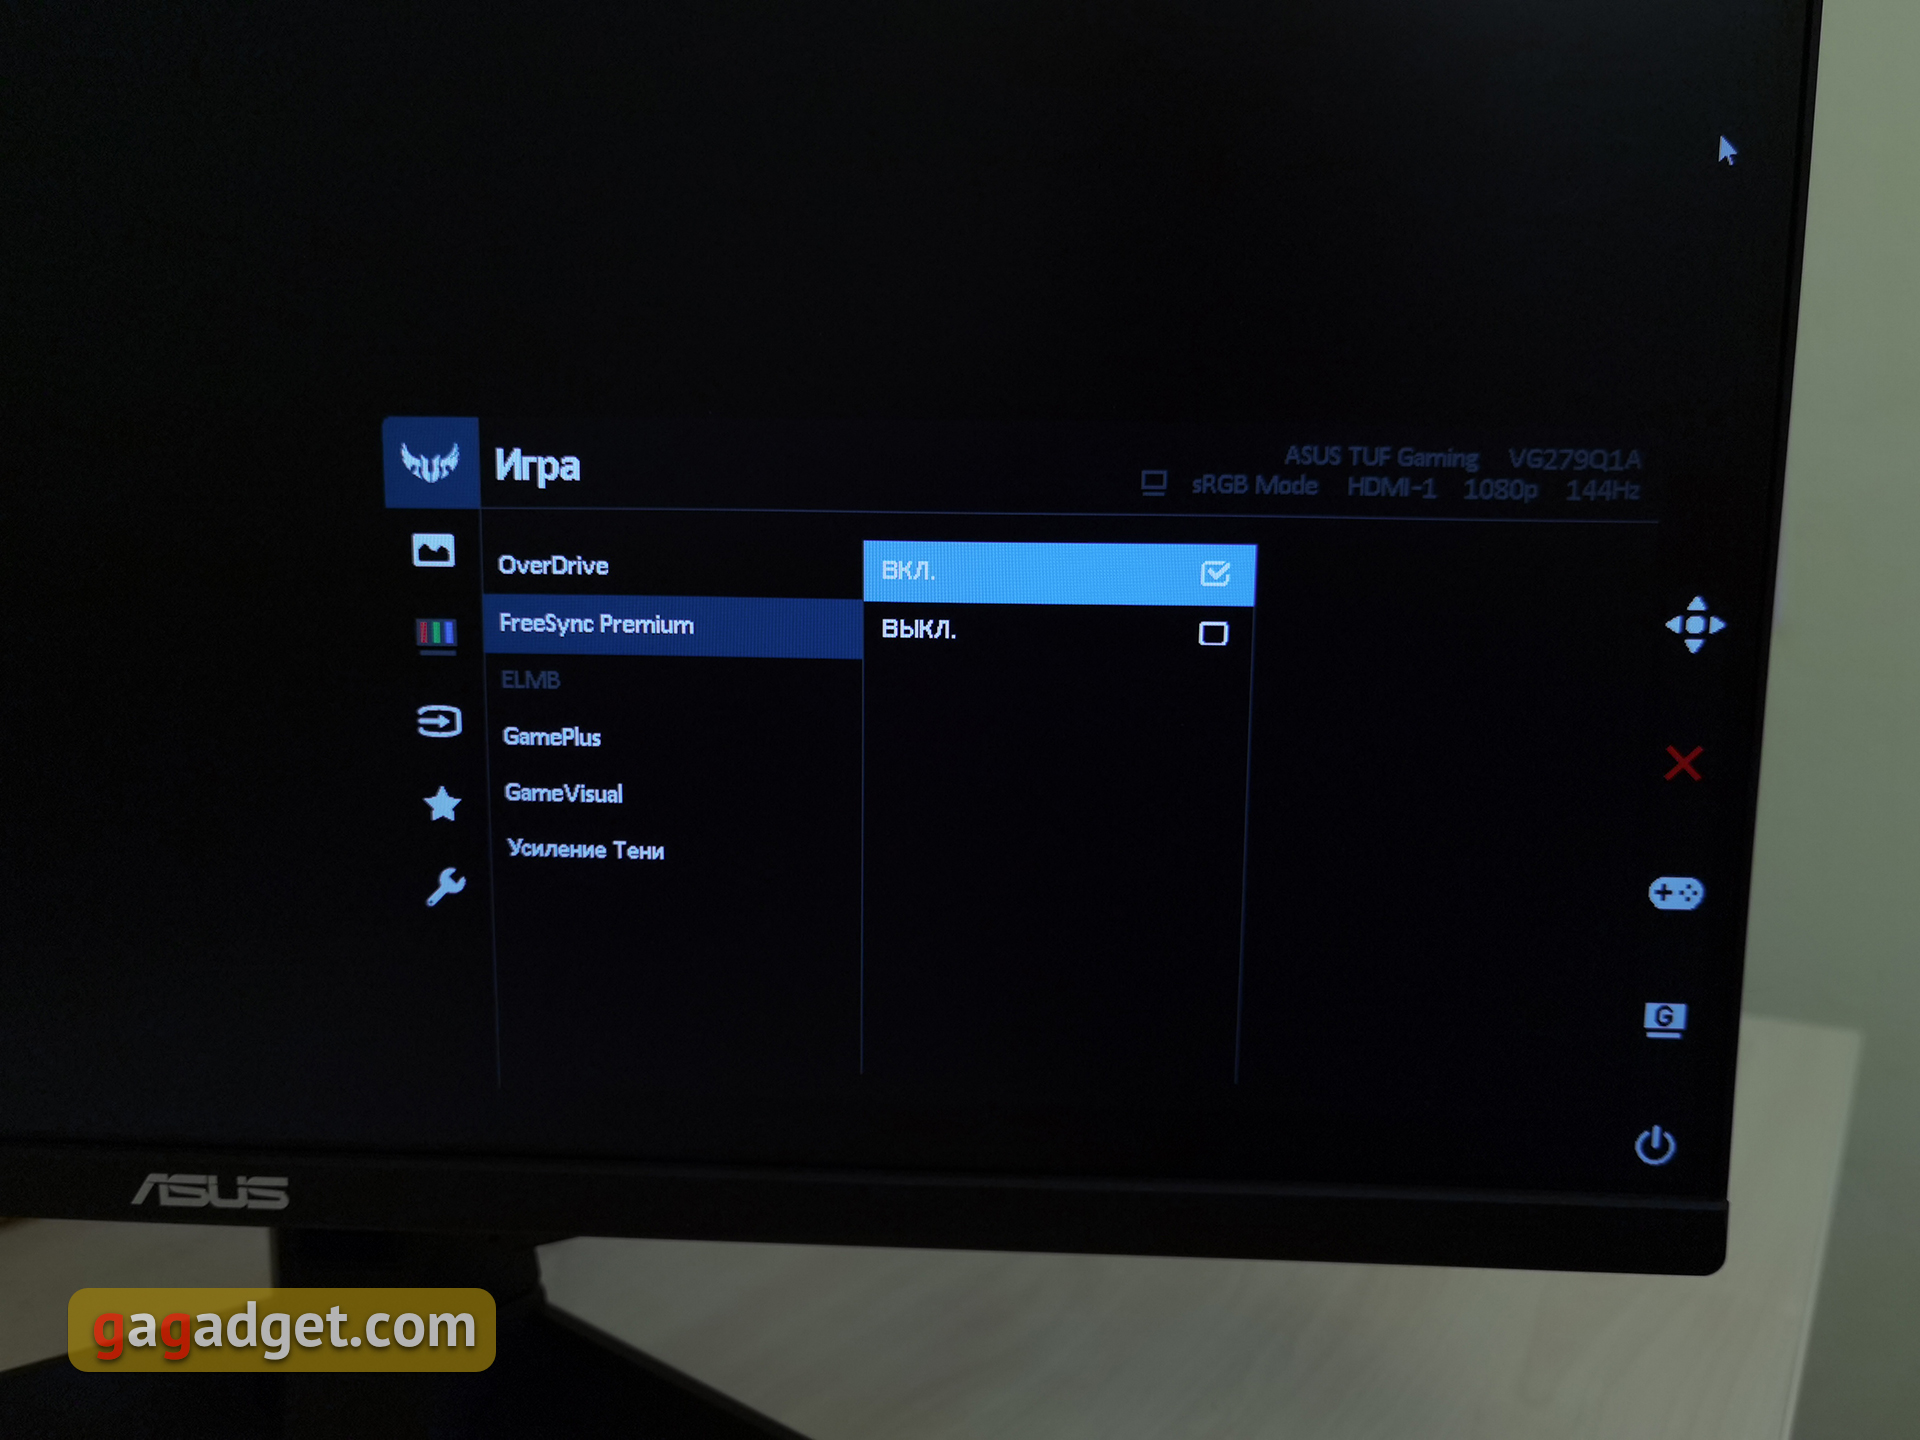 Обзор ASUS TUF Gaming VG279Q1A: 27-дюймовый игровой монитор с IPS-матрицей и частотой 165 Гц-38